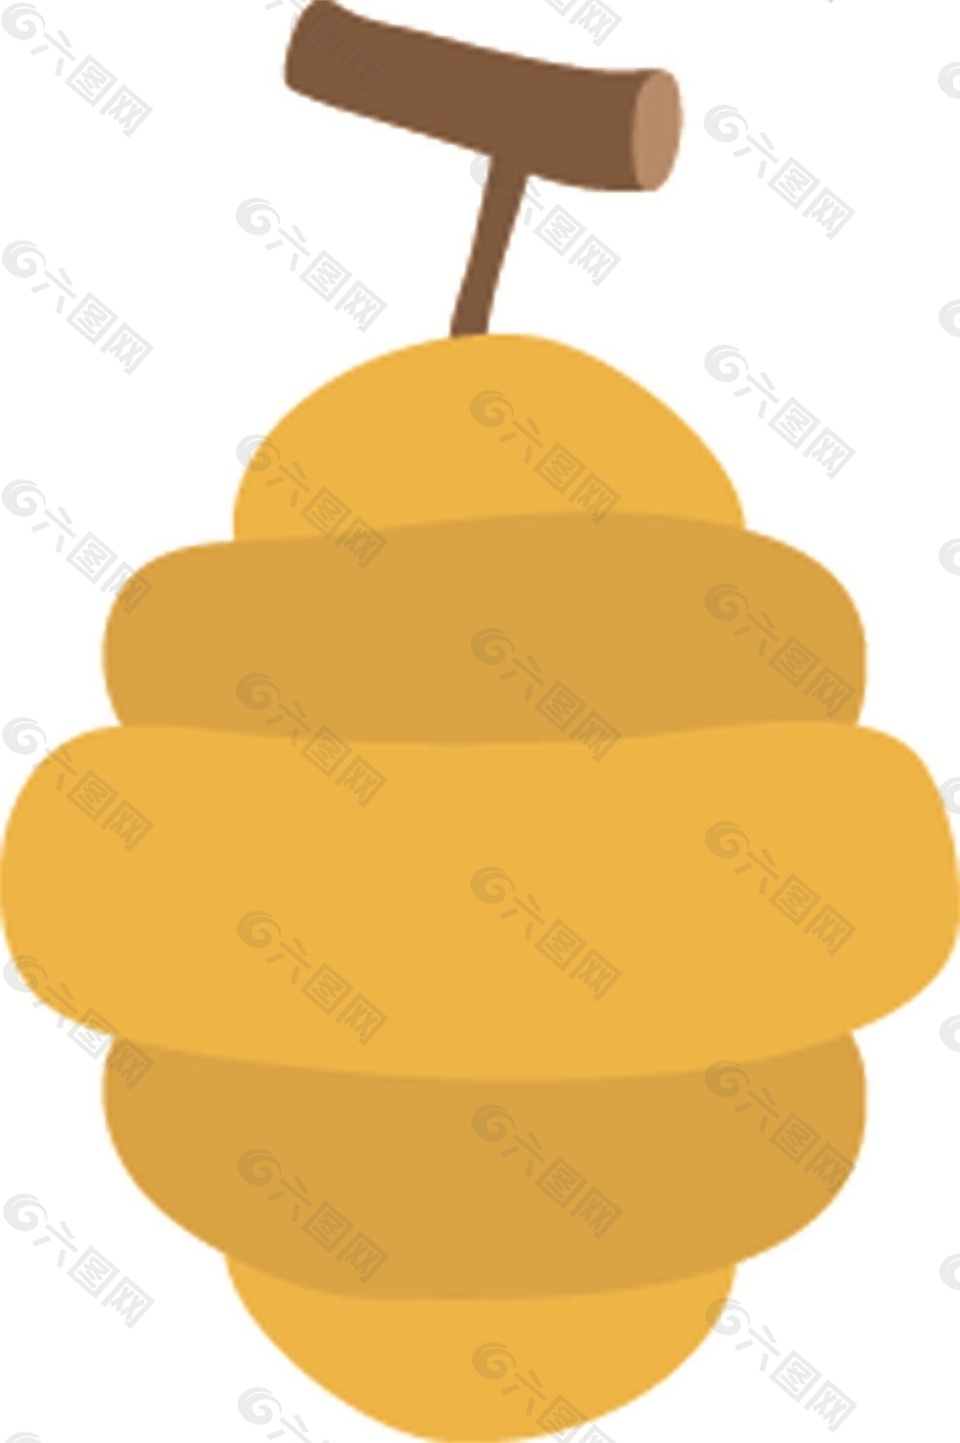 黄色蜂蜜矢量素材